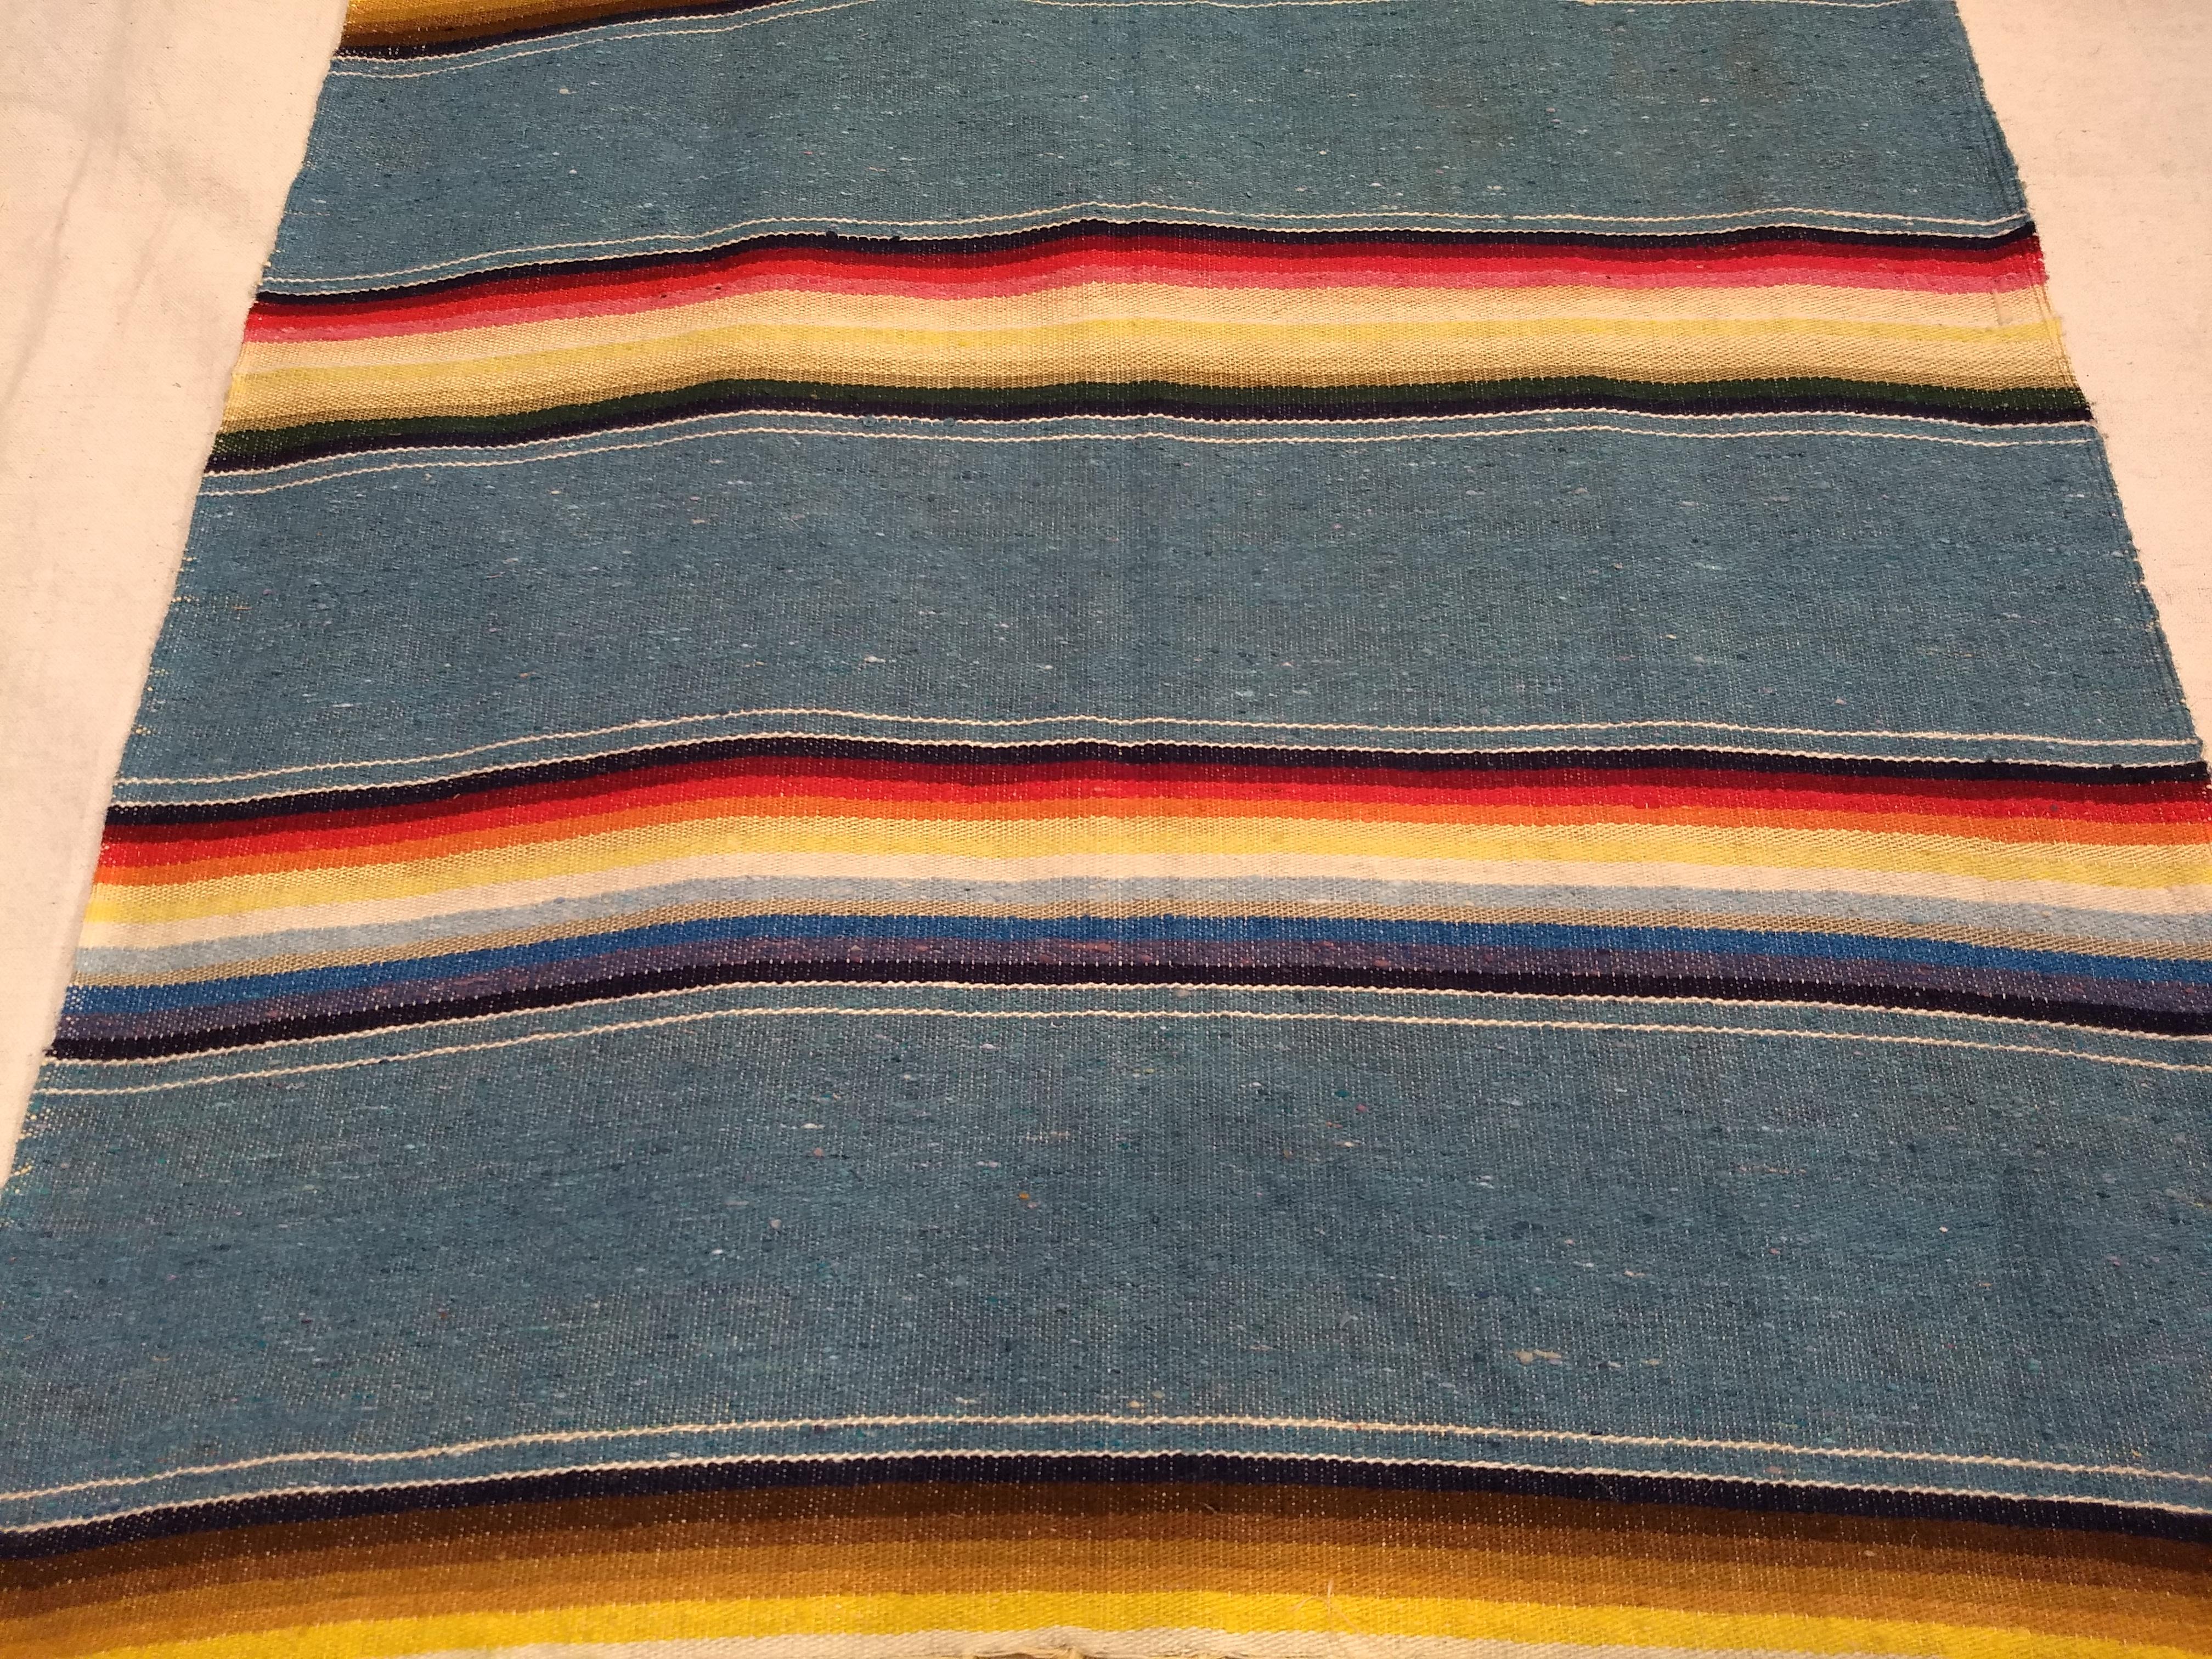 Hand-Woven Vintage Chimayo Area Rug, 2’ 2” x 4’ 1”